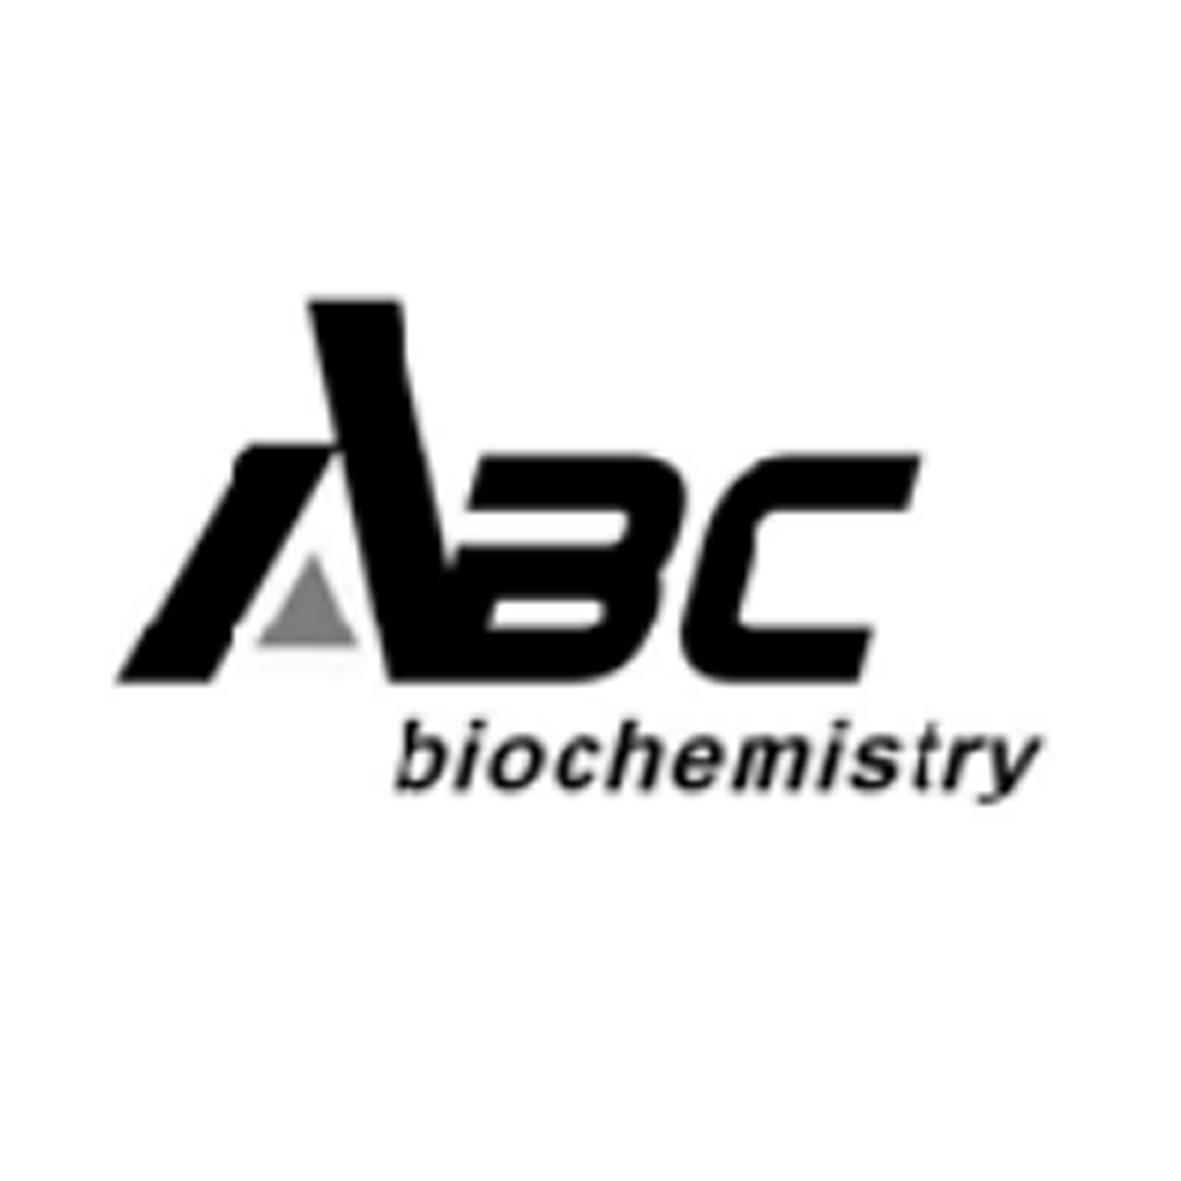 ABC BIOCHEMISTRYlogo